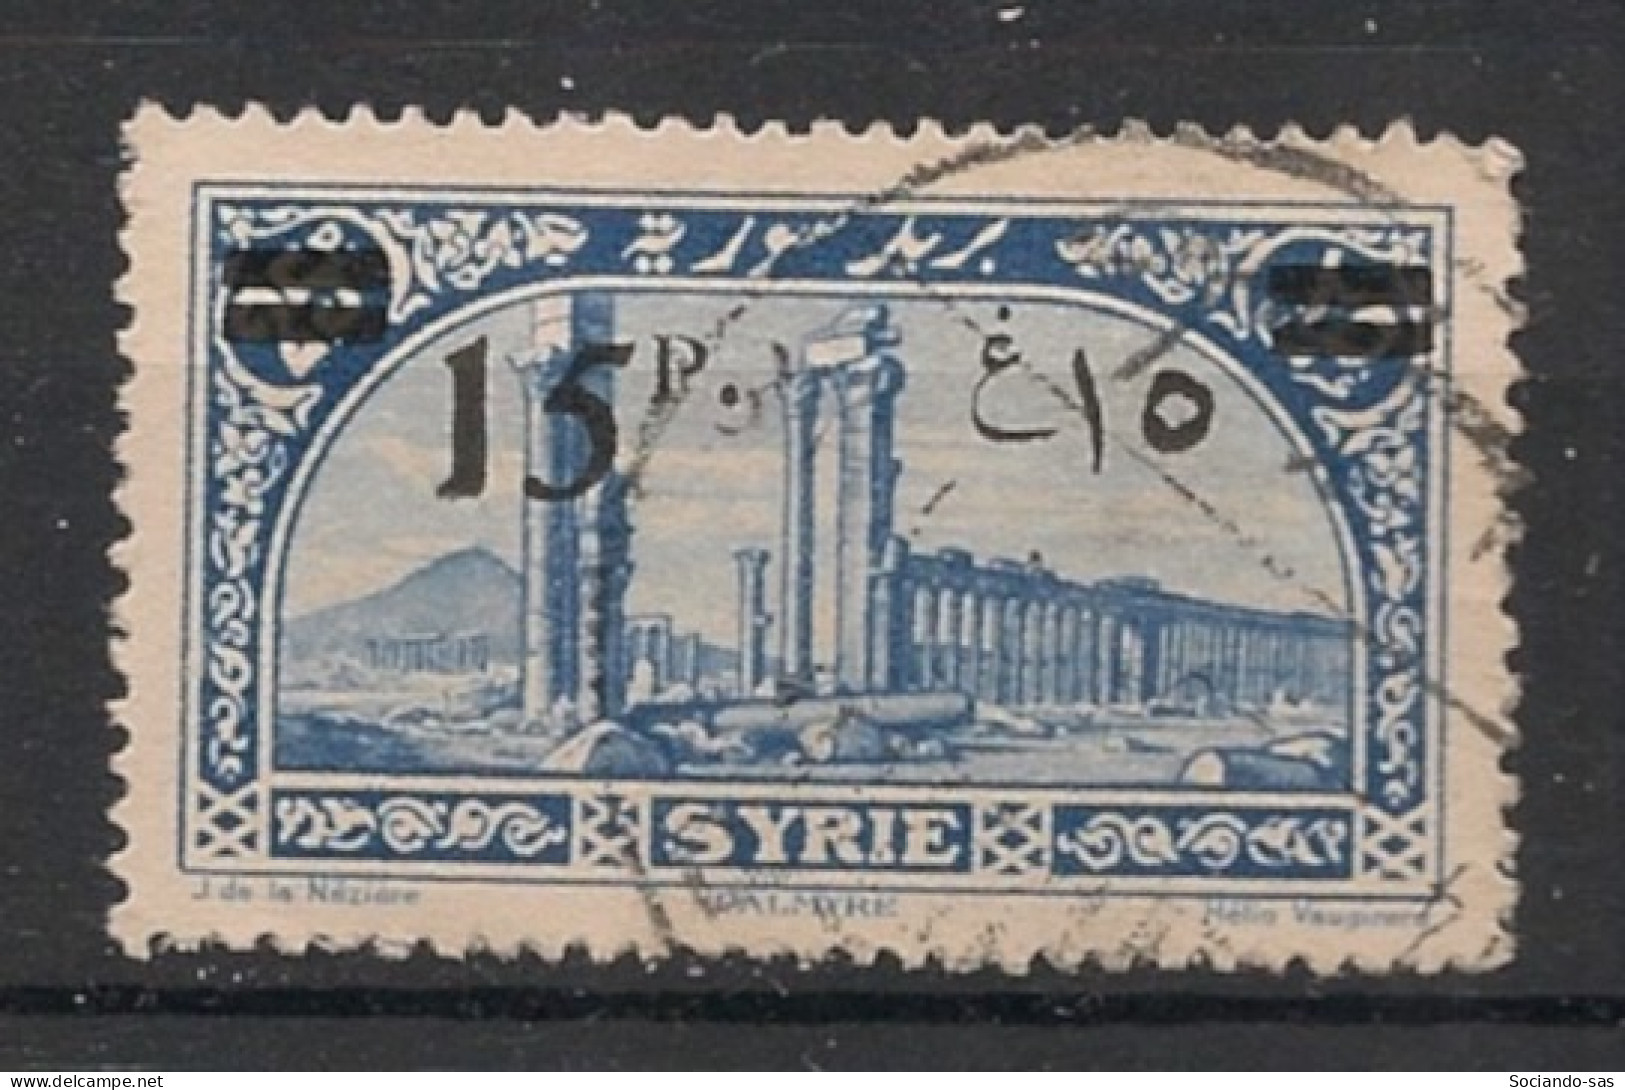 SYRIE - 1926 - N°YT. 183 - Palmyre 15pi Sur 25pi - Oblitéré / Used - Oblitérés